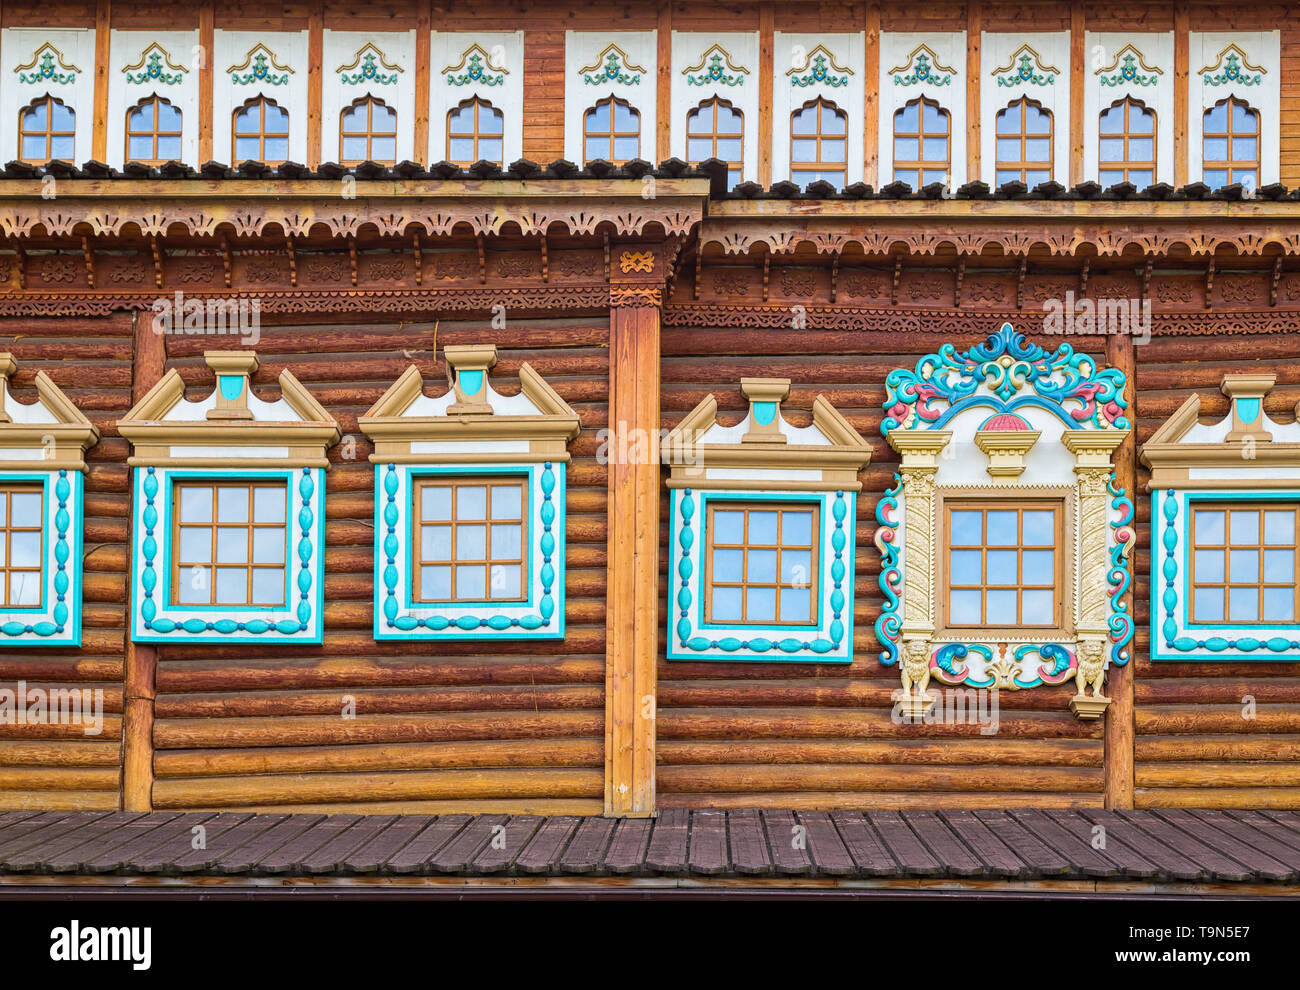 Decorate windows nella vecchia casa di log. Russo architettura tradizionale.Tsar del palazzo di legno nel parco Kolomenskoe, Mosca, Russia. Foto Stock